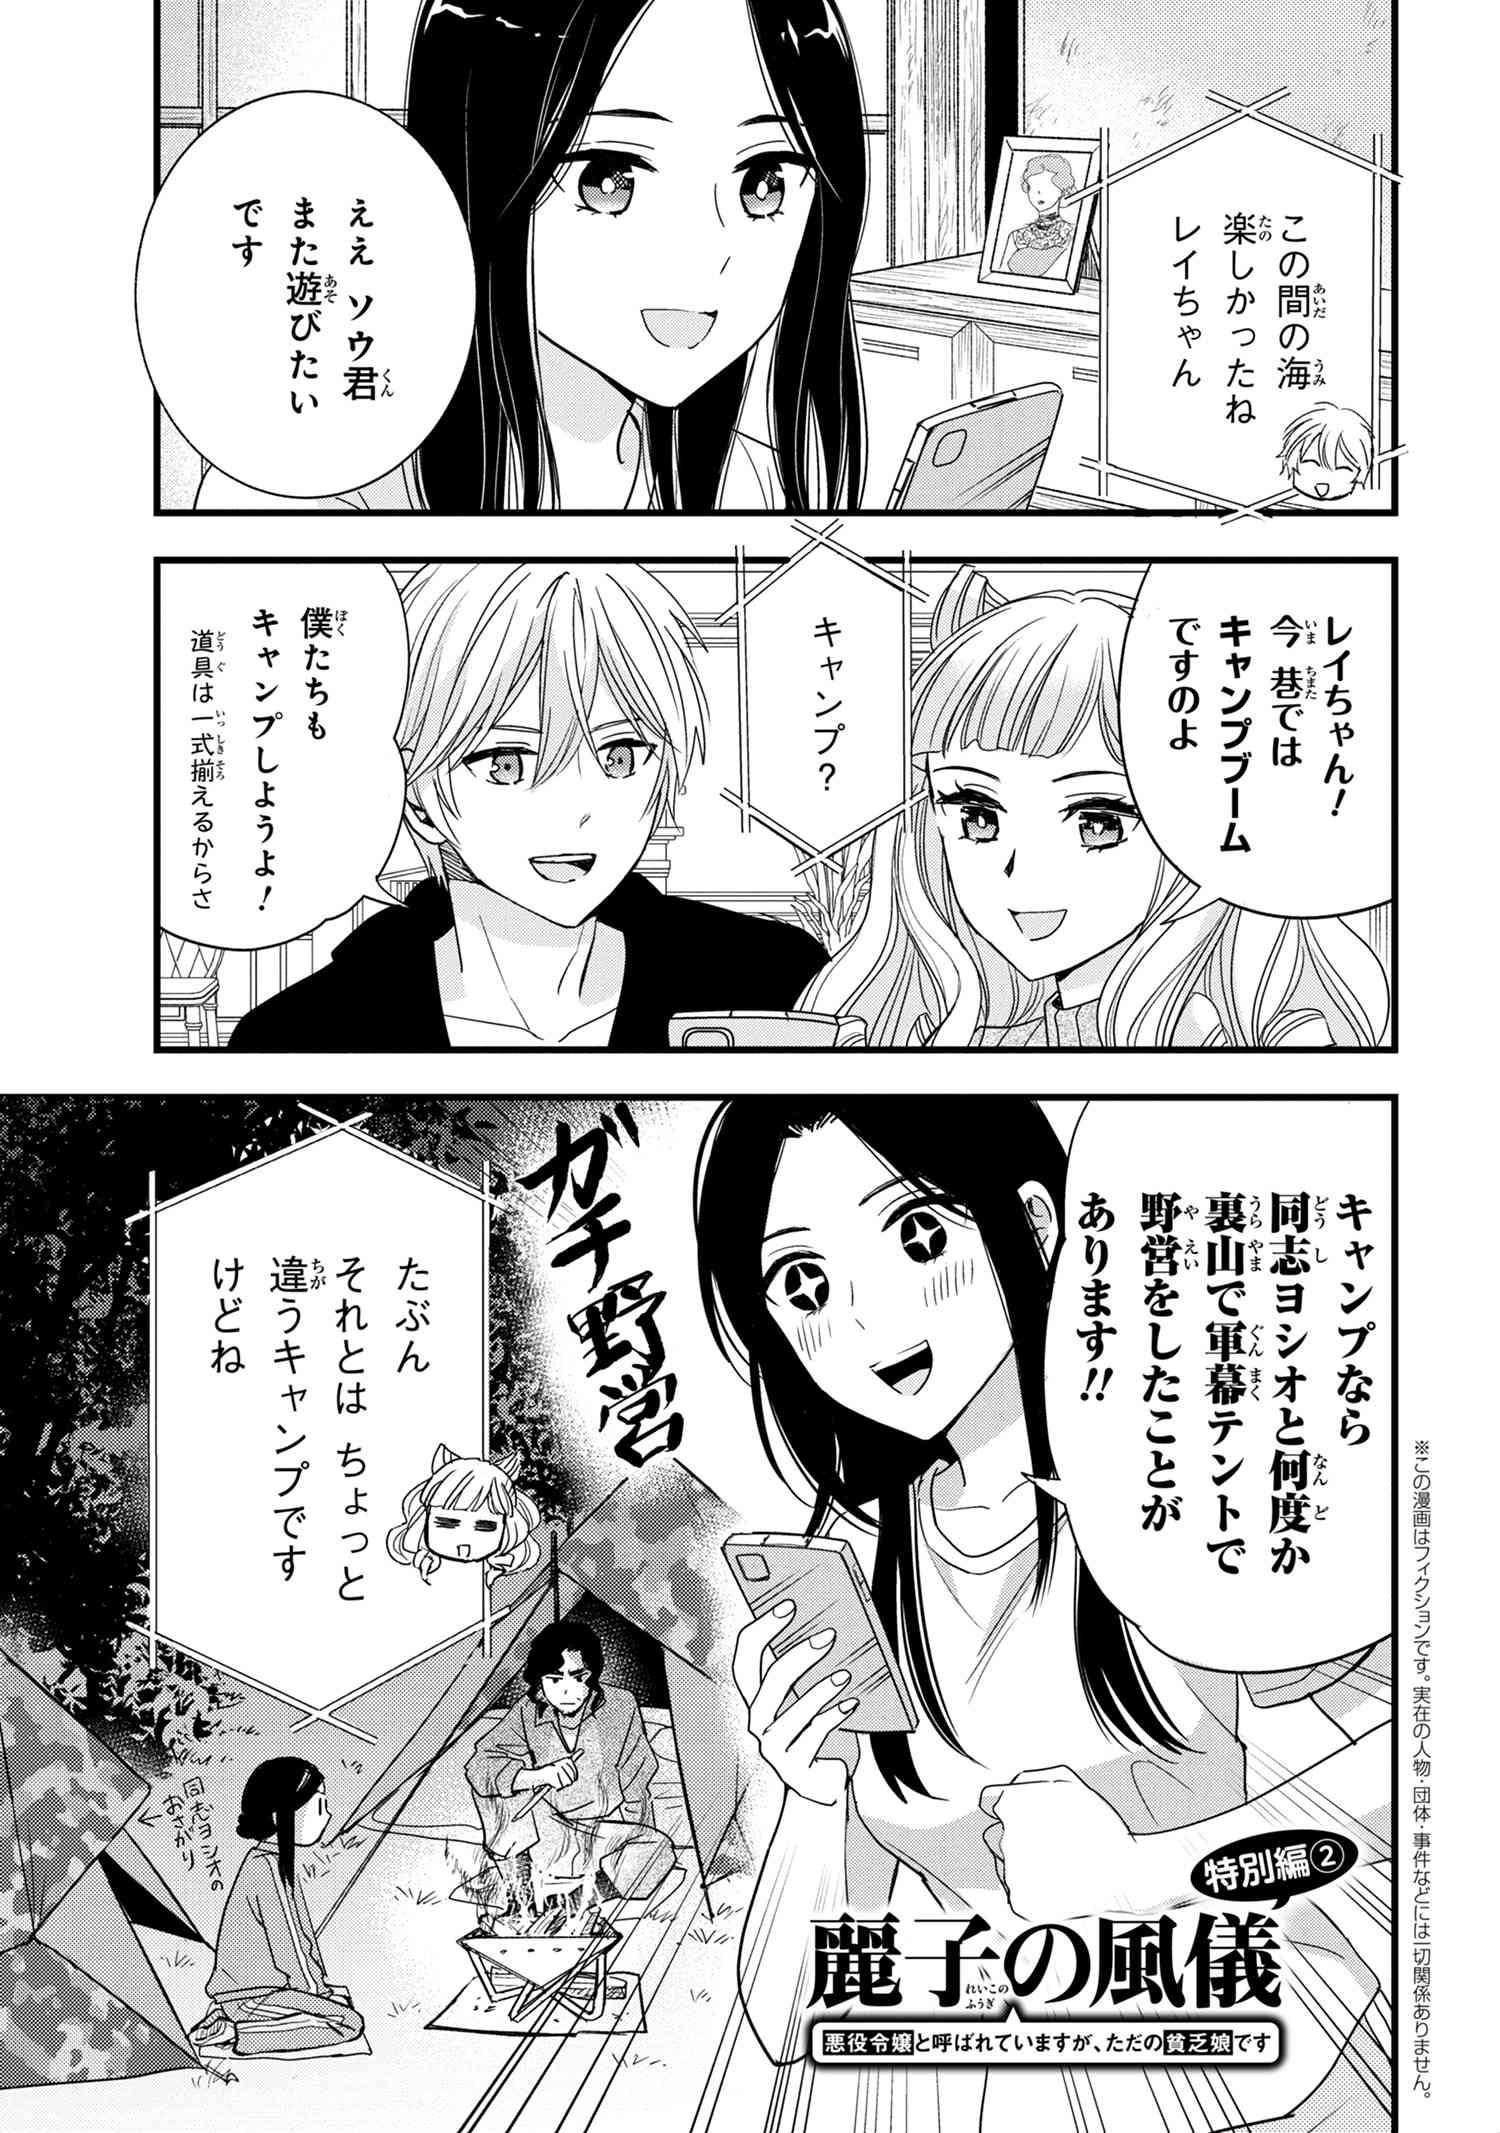 Reiko no Fuugi Akuyaku Reijou to Yobarete imasu ga, tada no Binbou Musume desu - Chapter 12.4 - Page 1